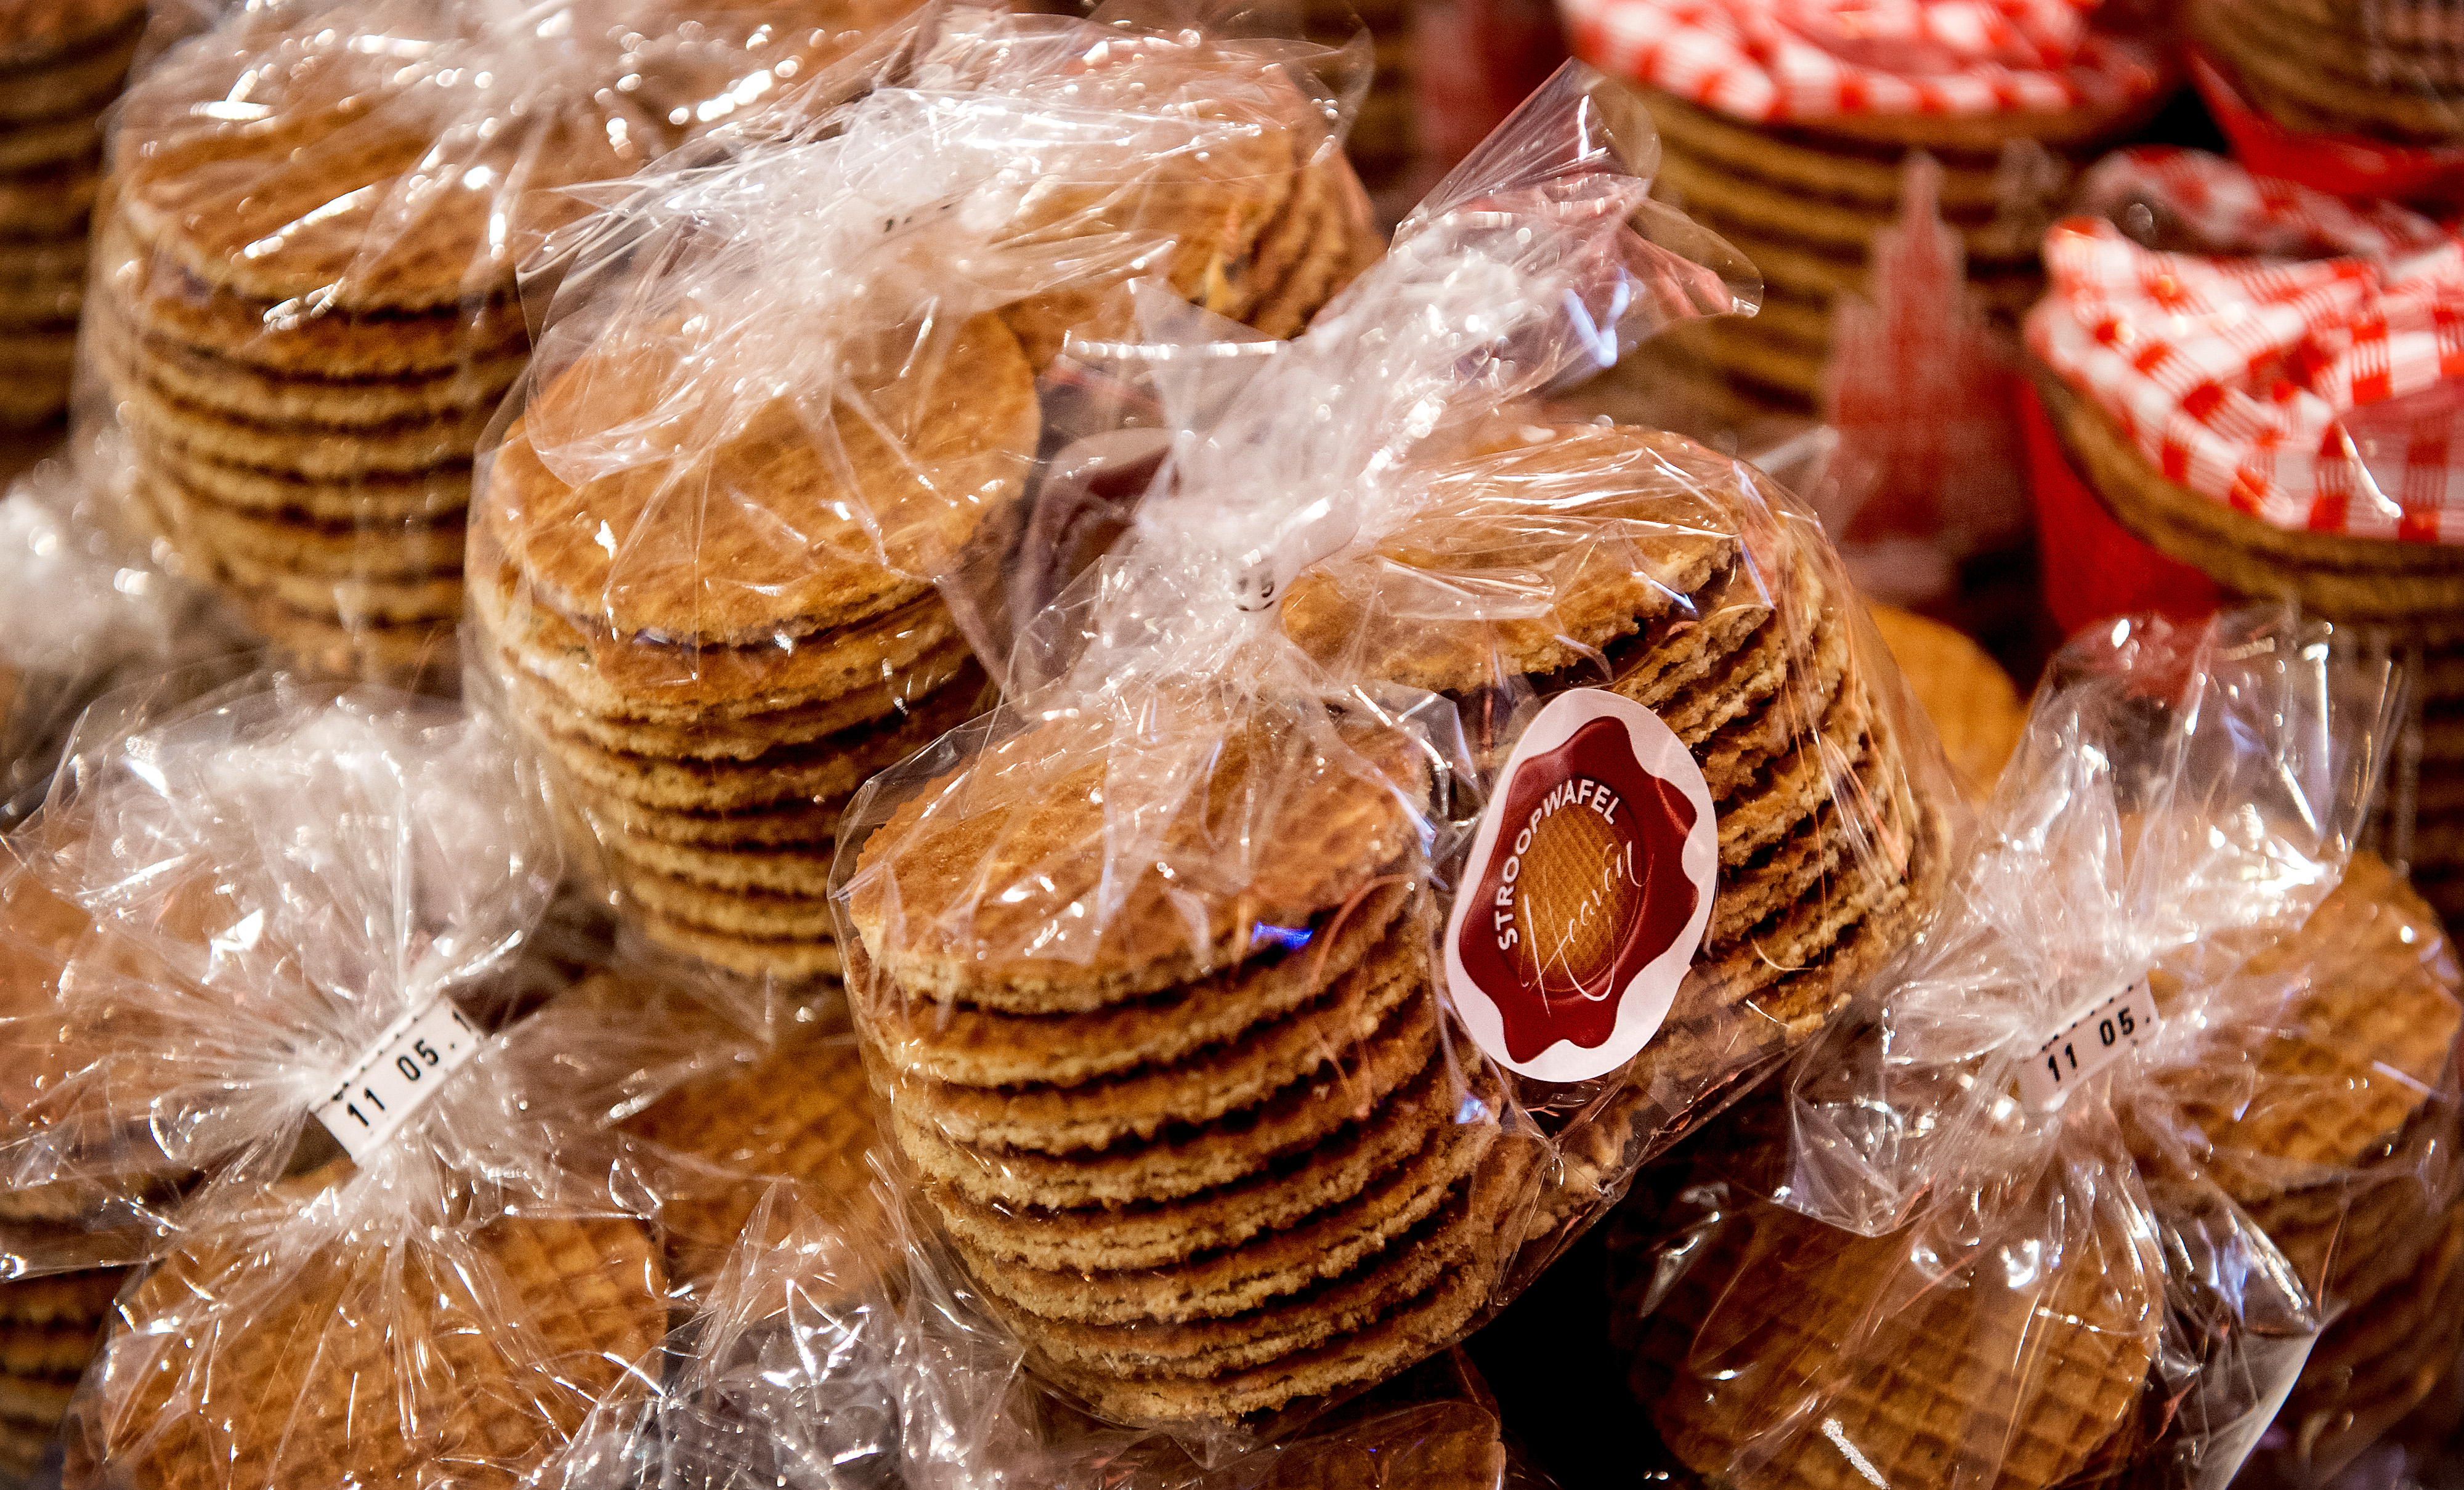 Nederland koekjesland! Deze typische lekkernijen uit ons land scoren op ranglijst beste koekjes ter wereld